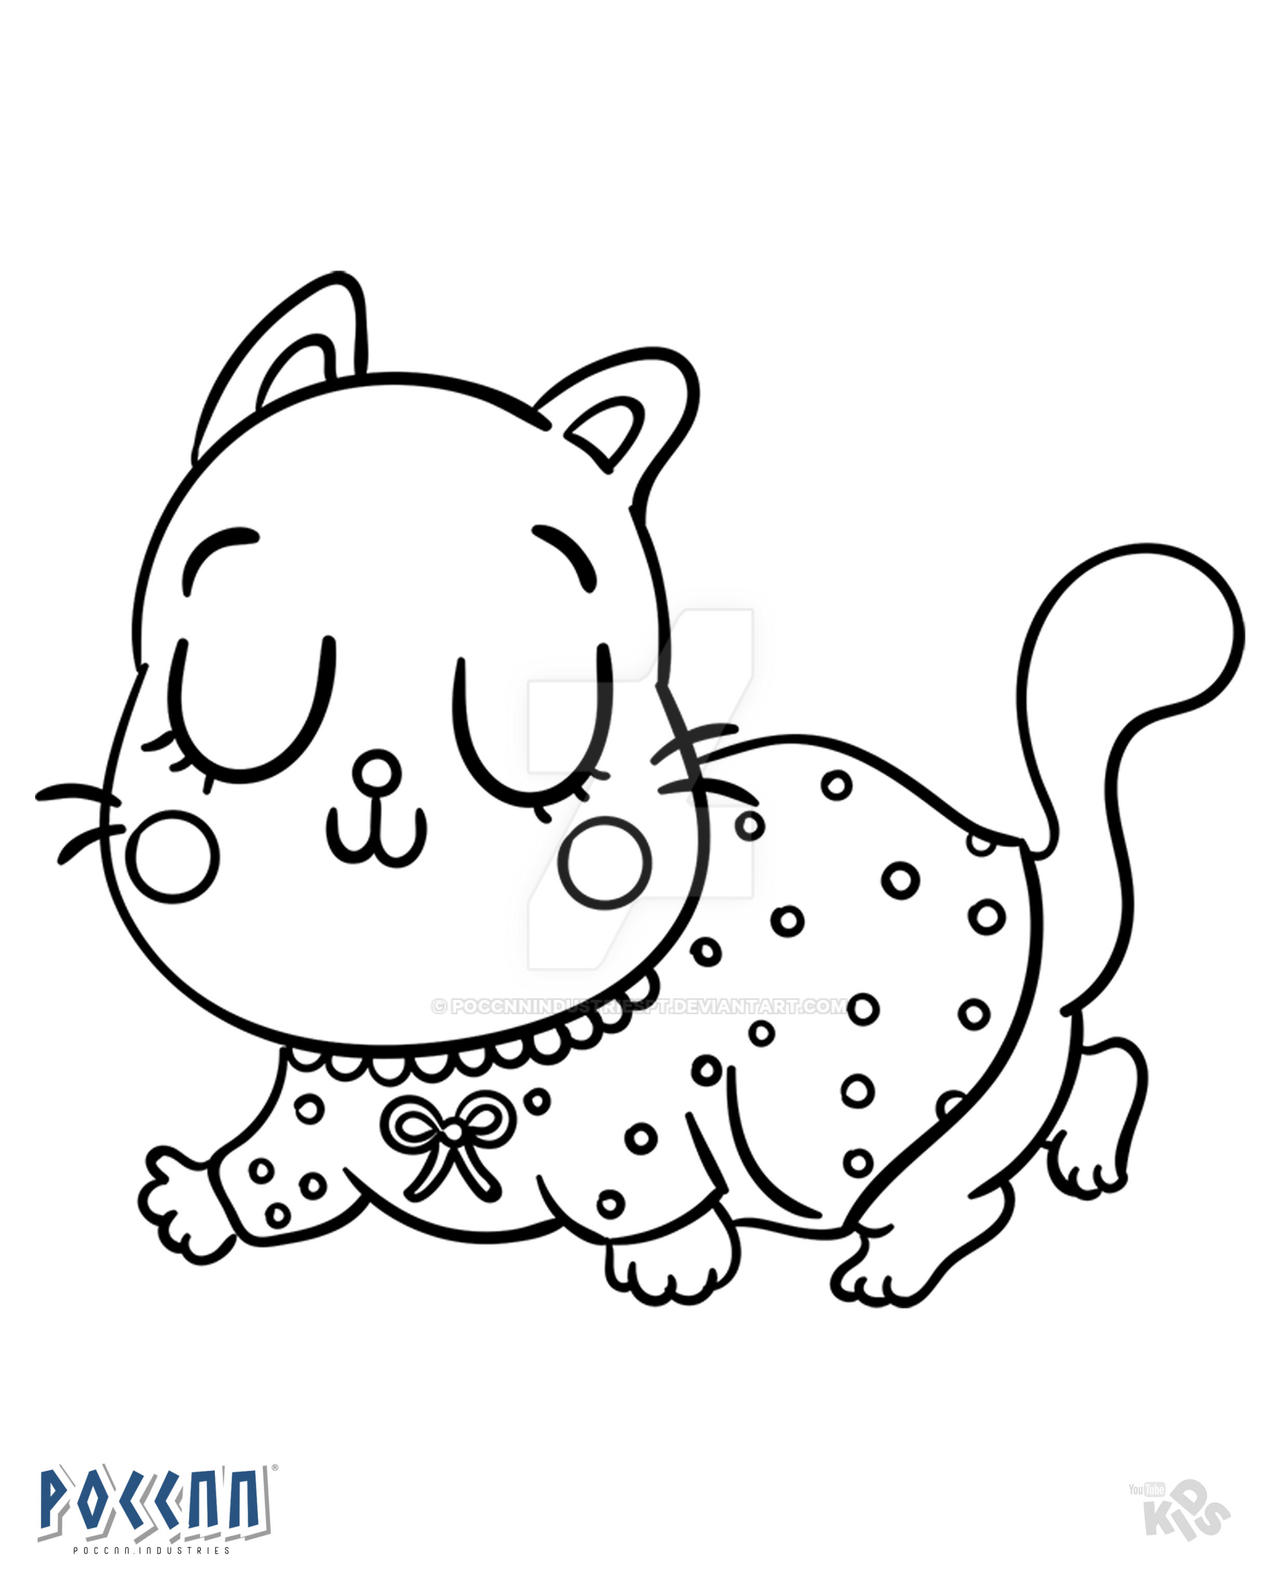 Gato Kawaii no Sorvete para colorir